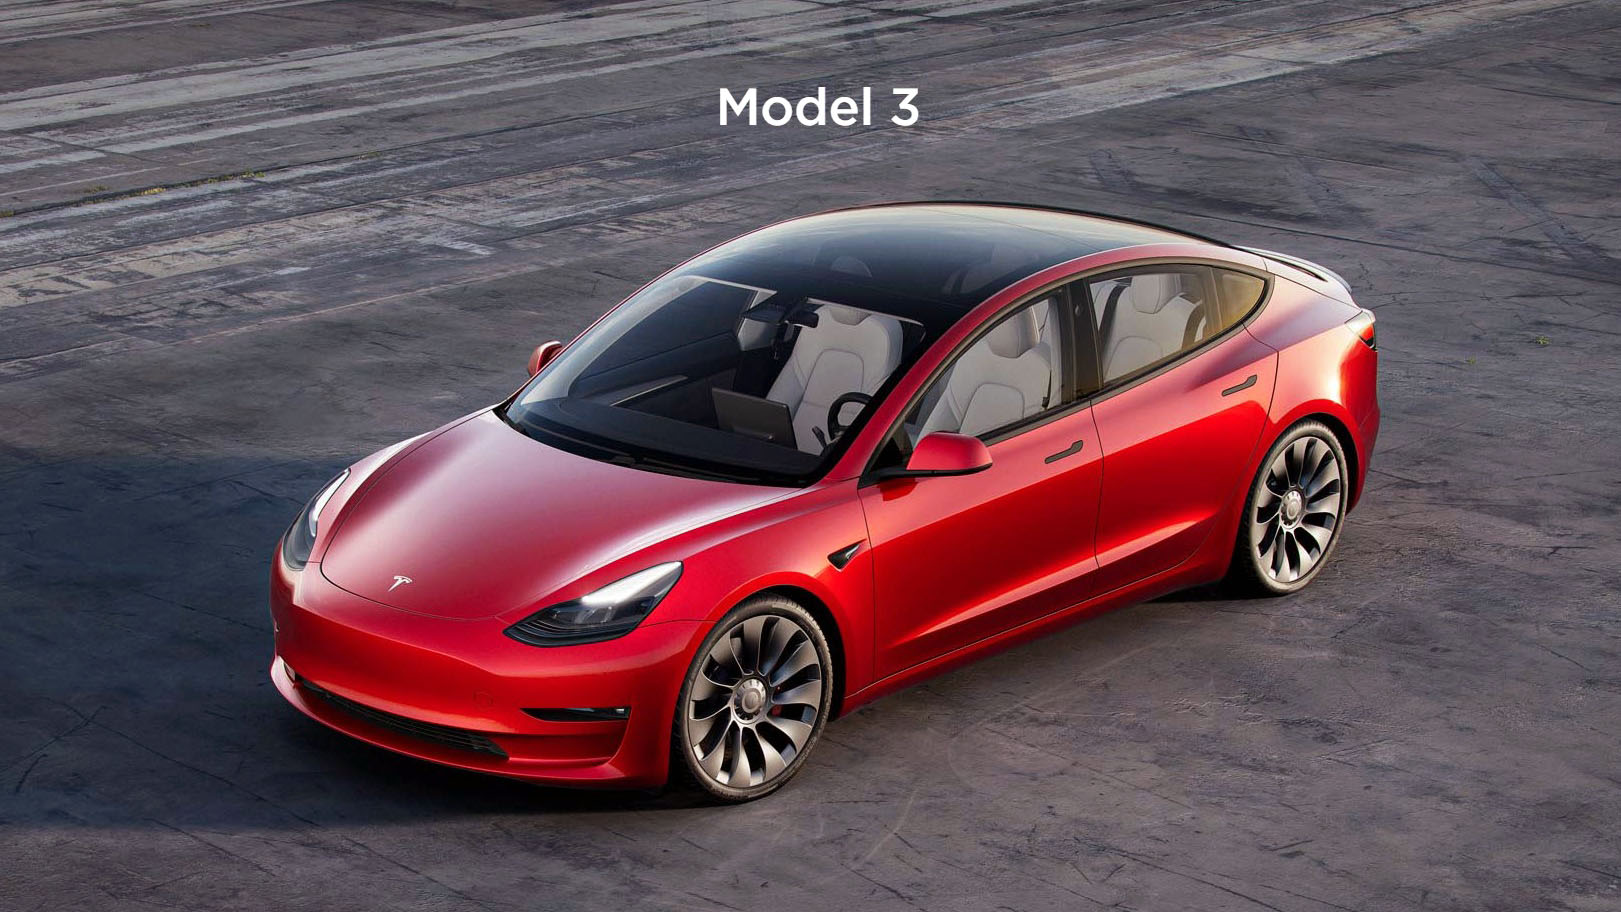 2023 Tesla Model 3 met groter bereik en goedkopere prijs gebruikt mogelijk M3P-batterijen - Nieuws